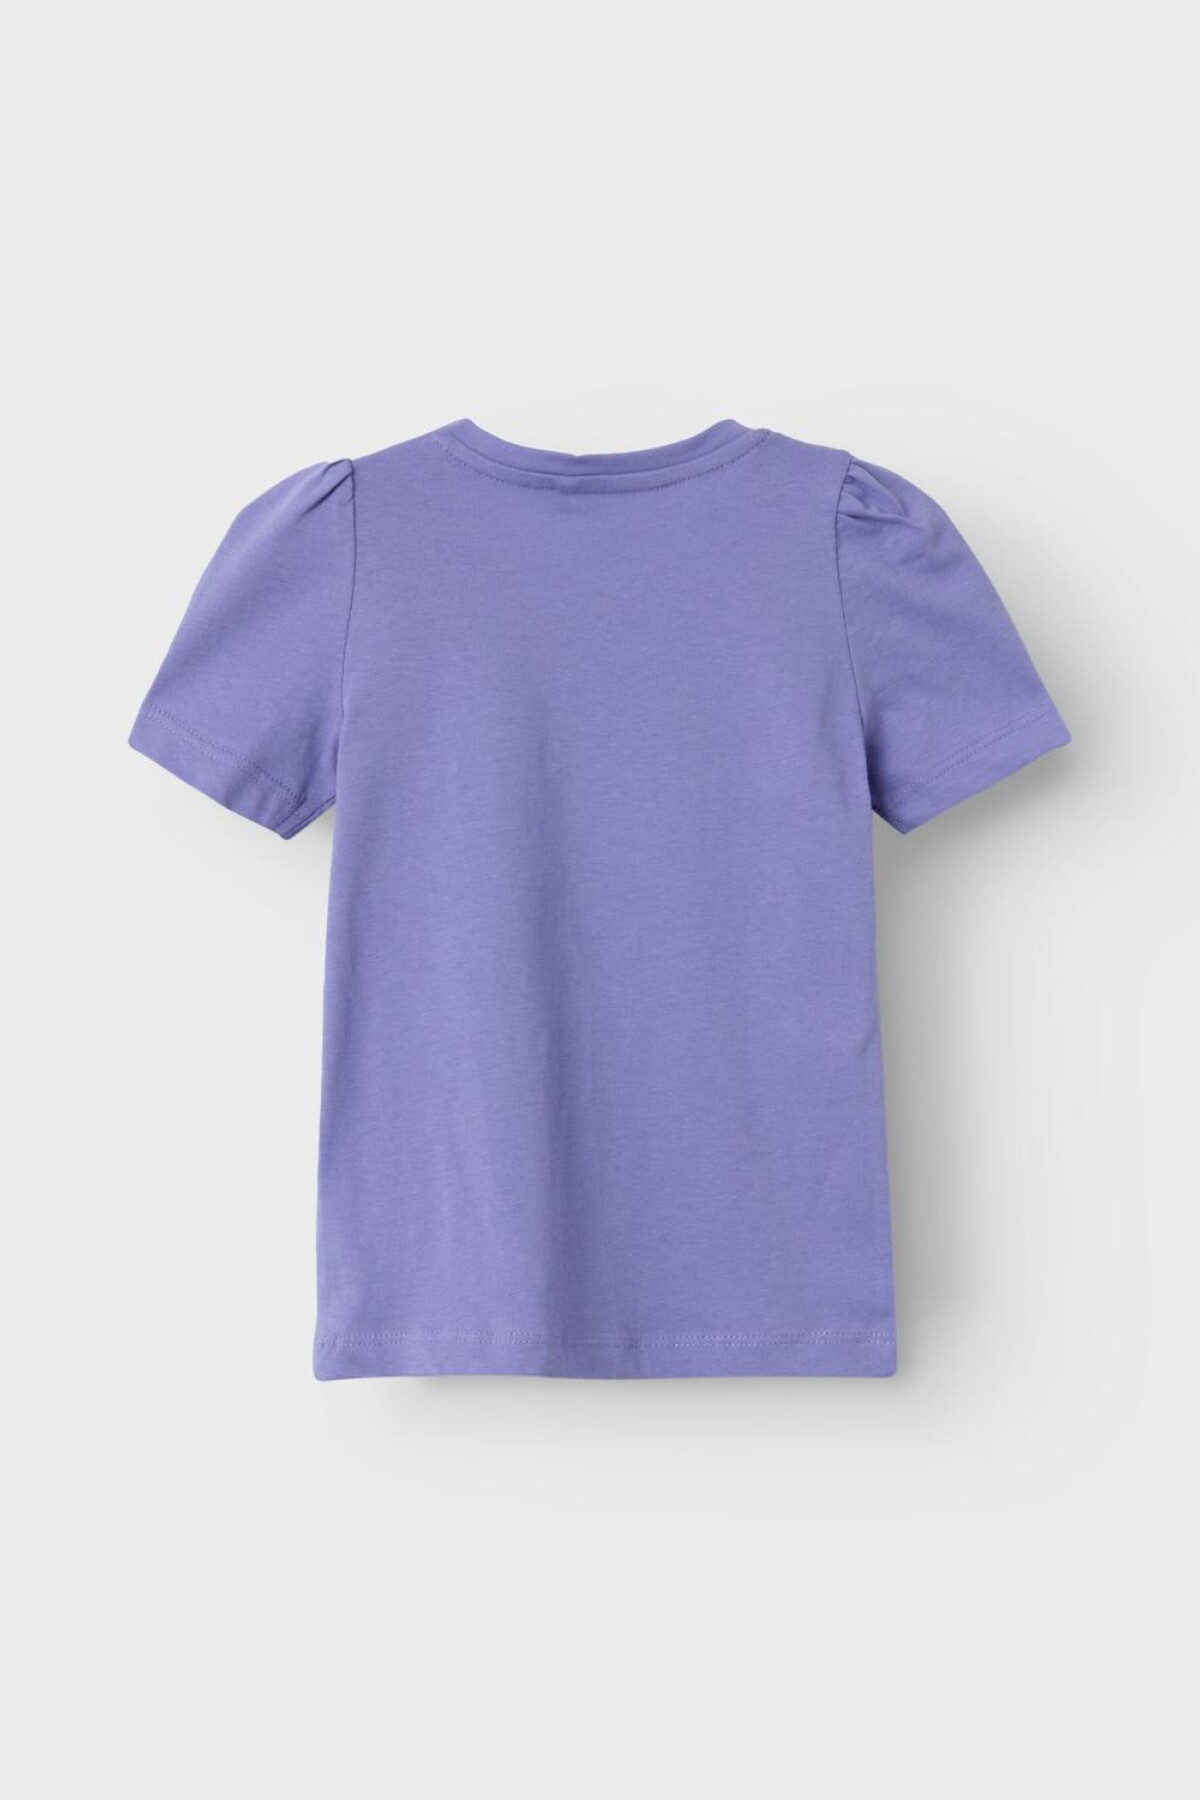 Camiseta Kate Aster Purple